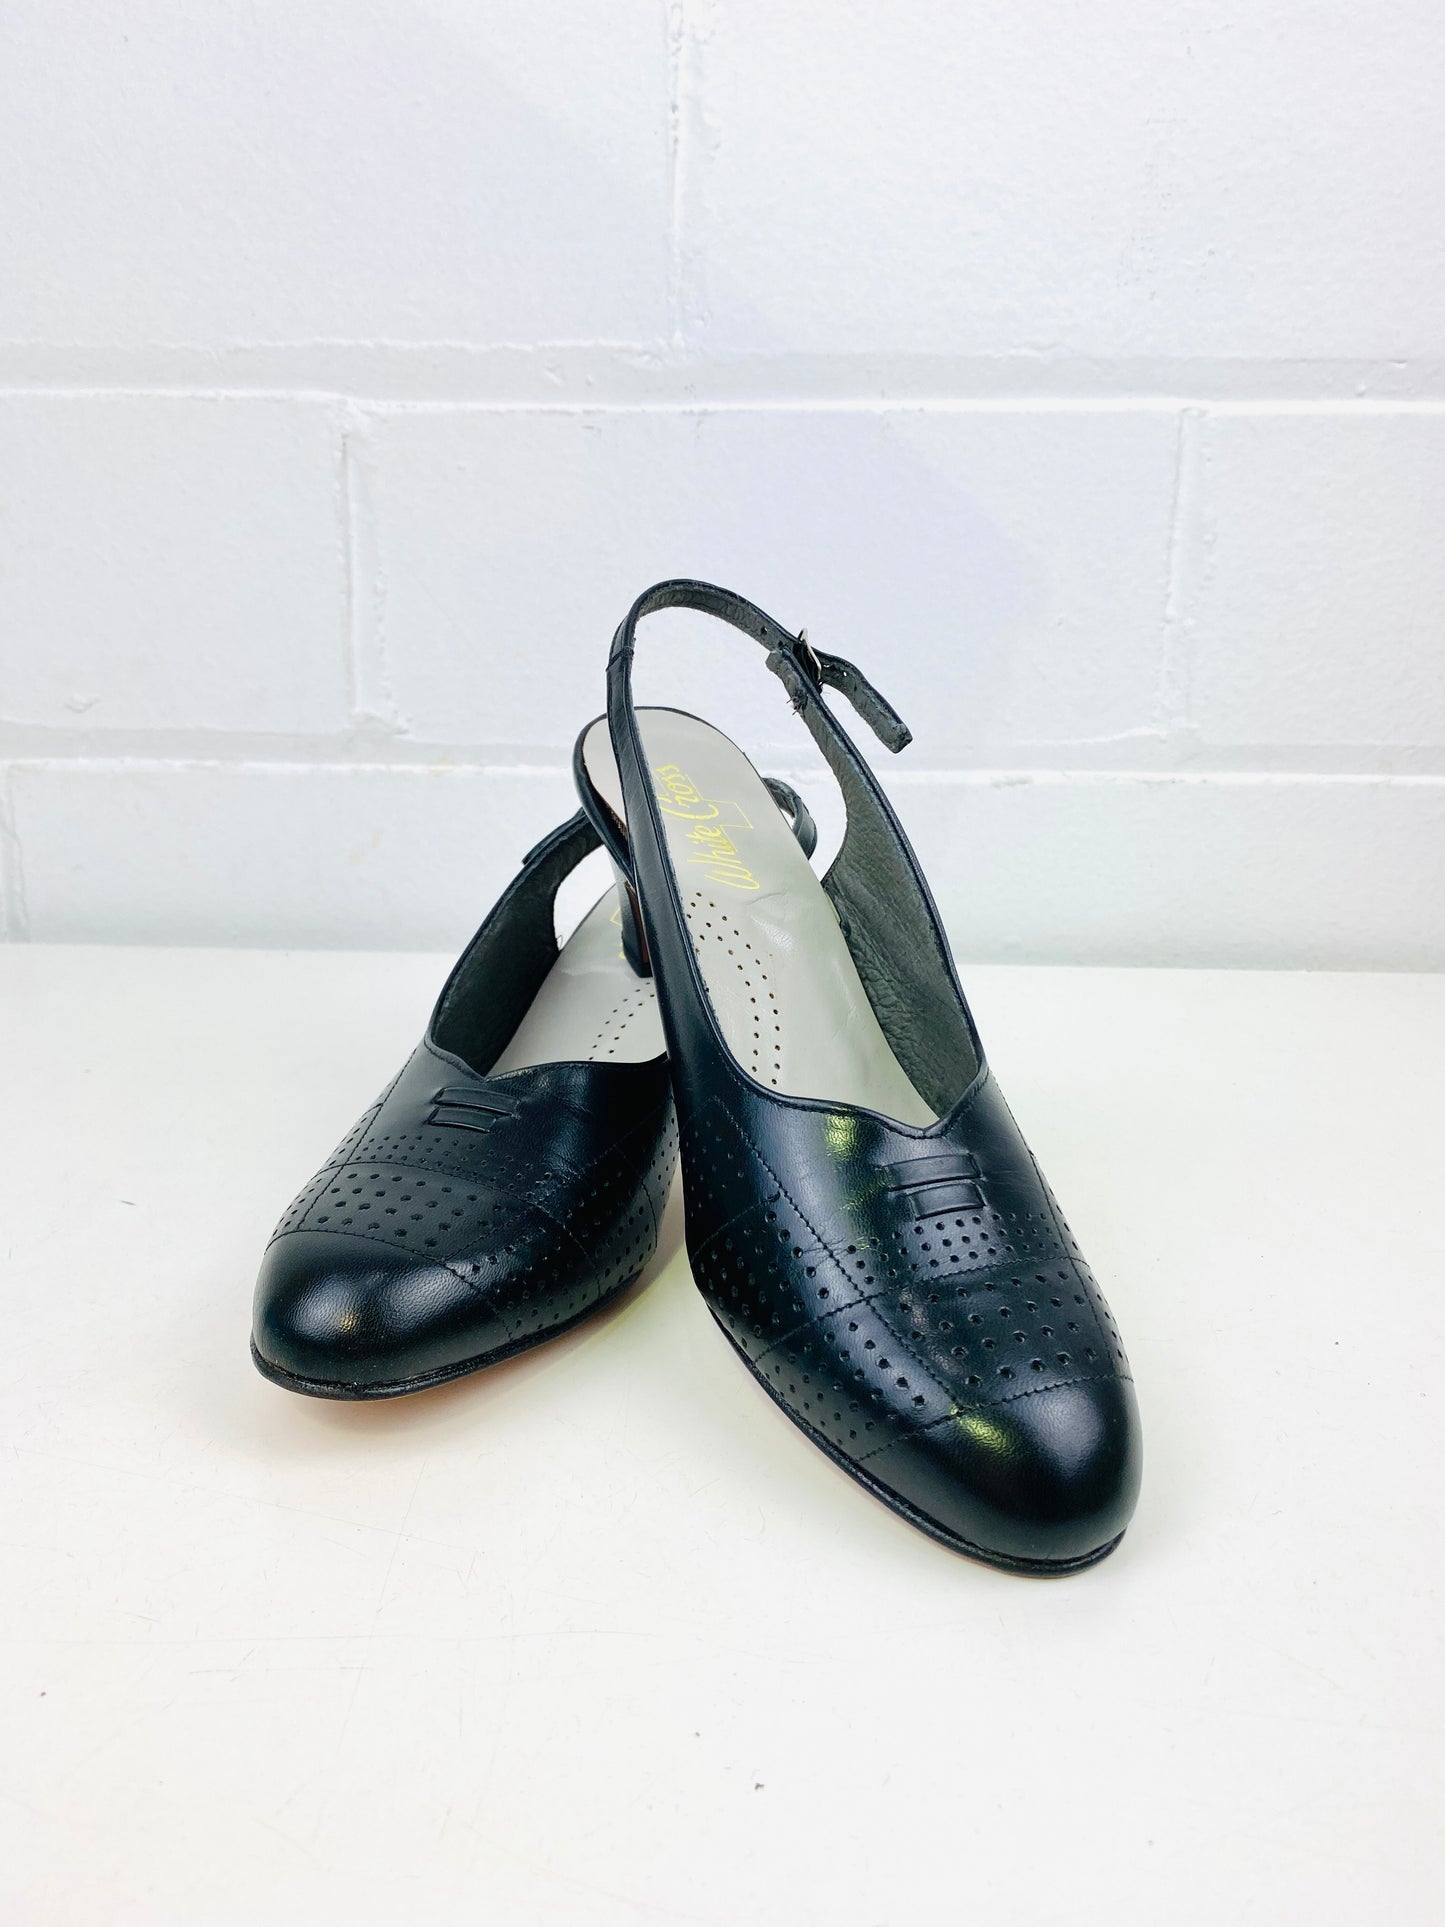 Vintage Deadstock Shoes, Women's 1980s Black Leather Mid-Heel Sling-Back Pumps, NOS, 8577